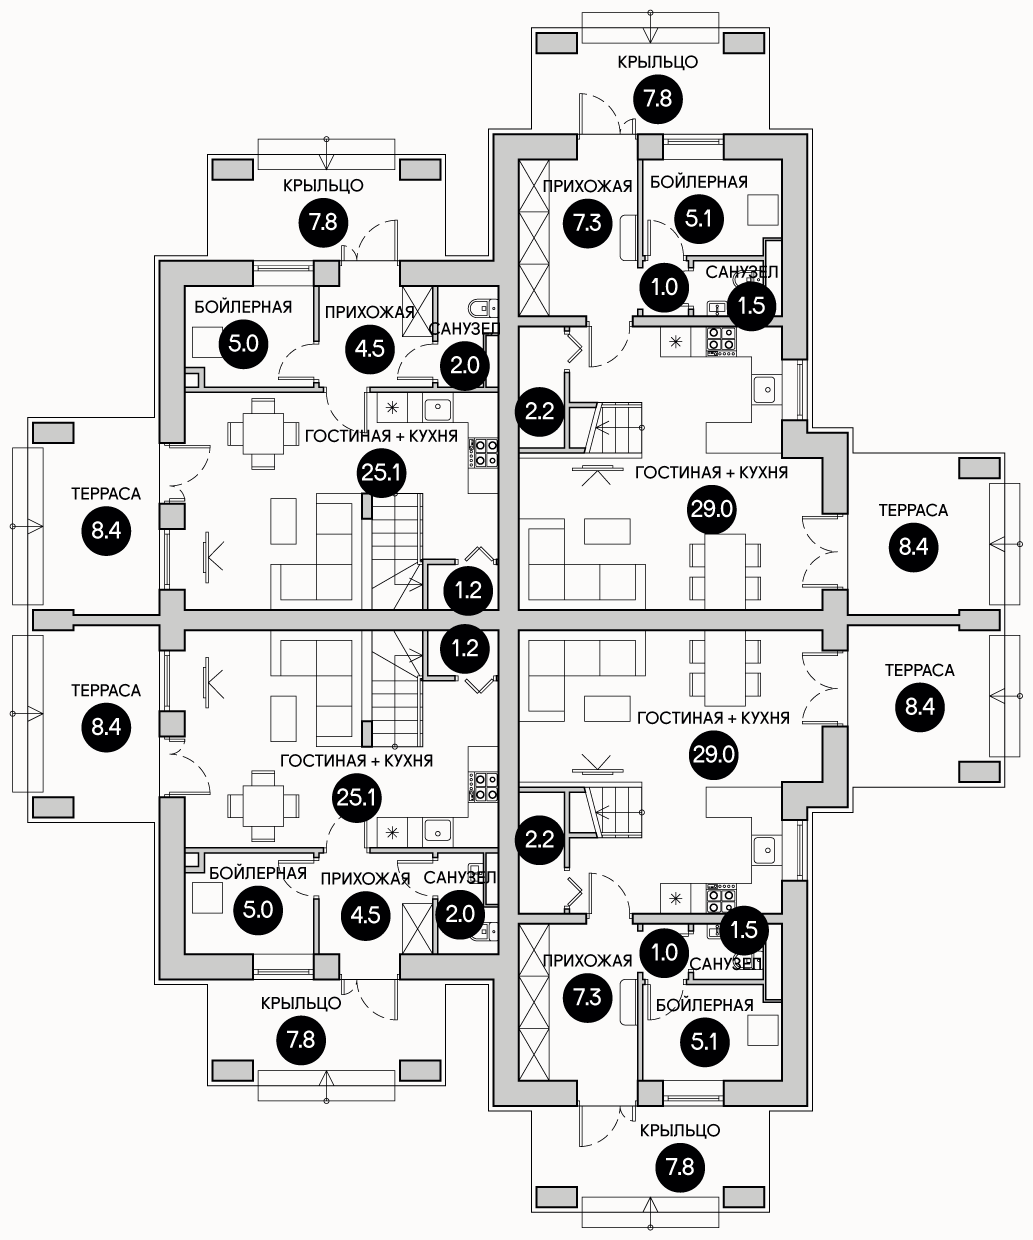 Планирока 1-го этажа в проекте Квадрохаус эконом класса KB-70/85